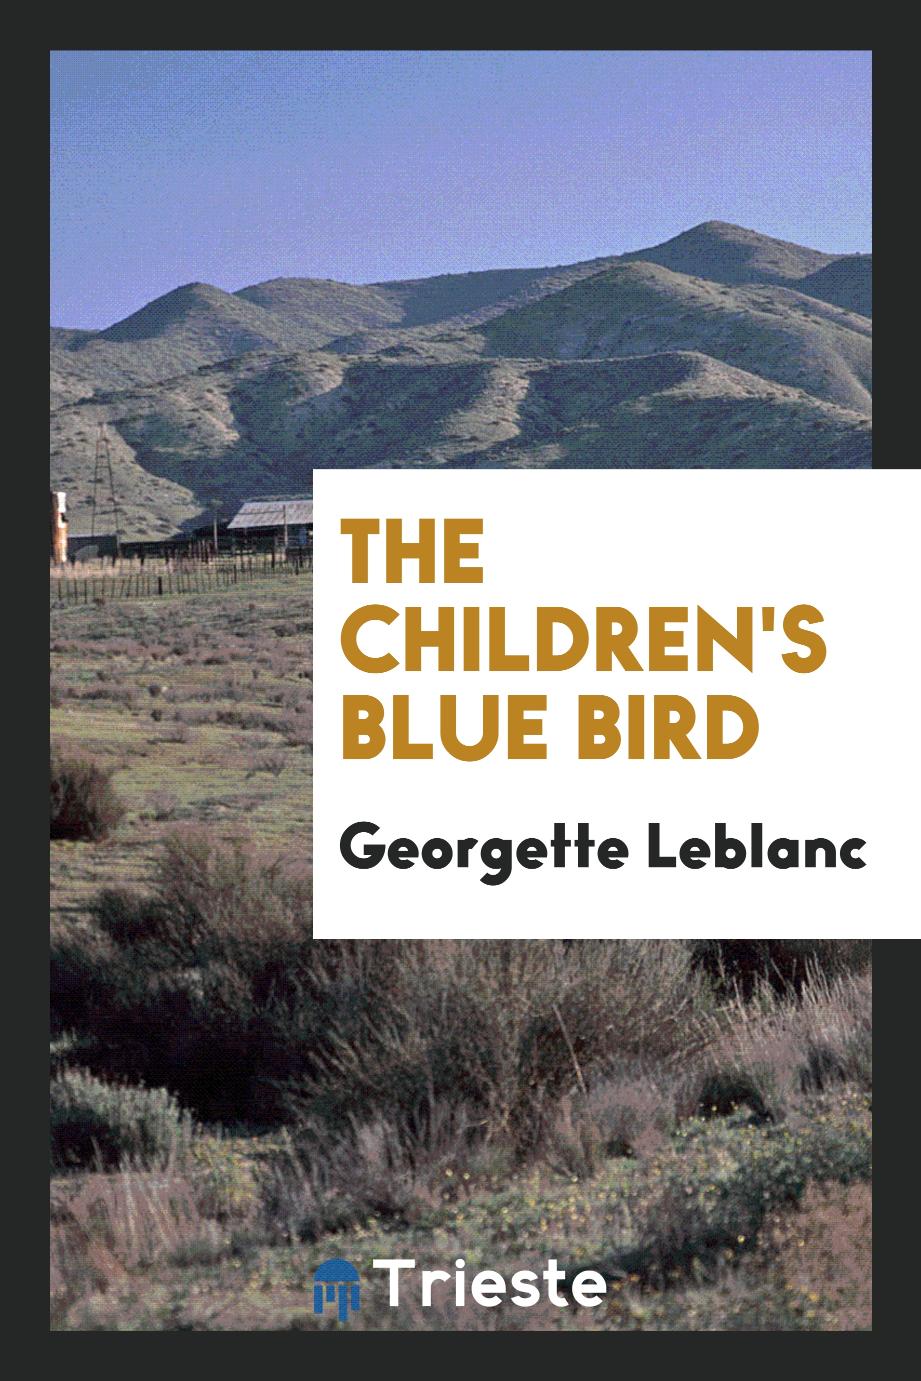 The children's Blue bird